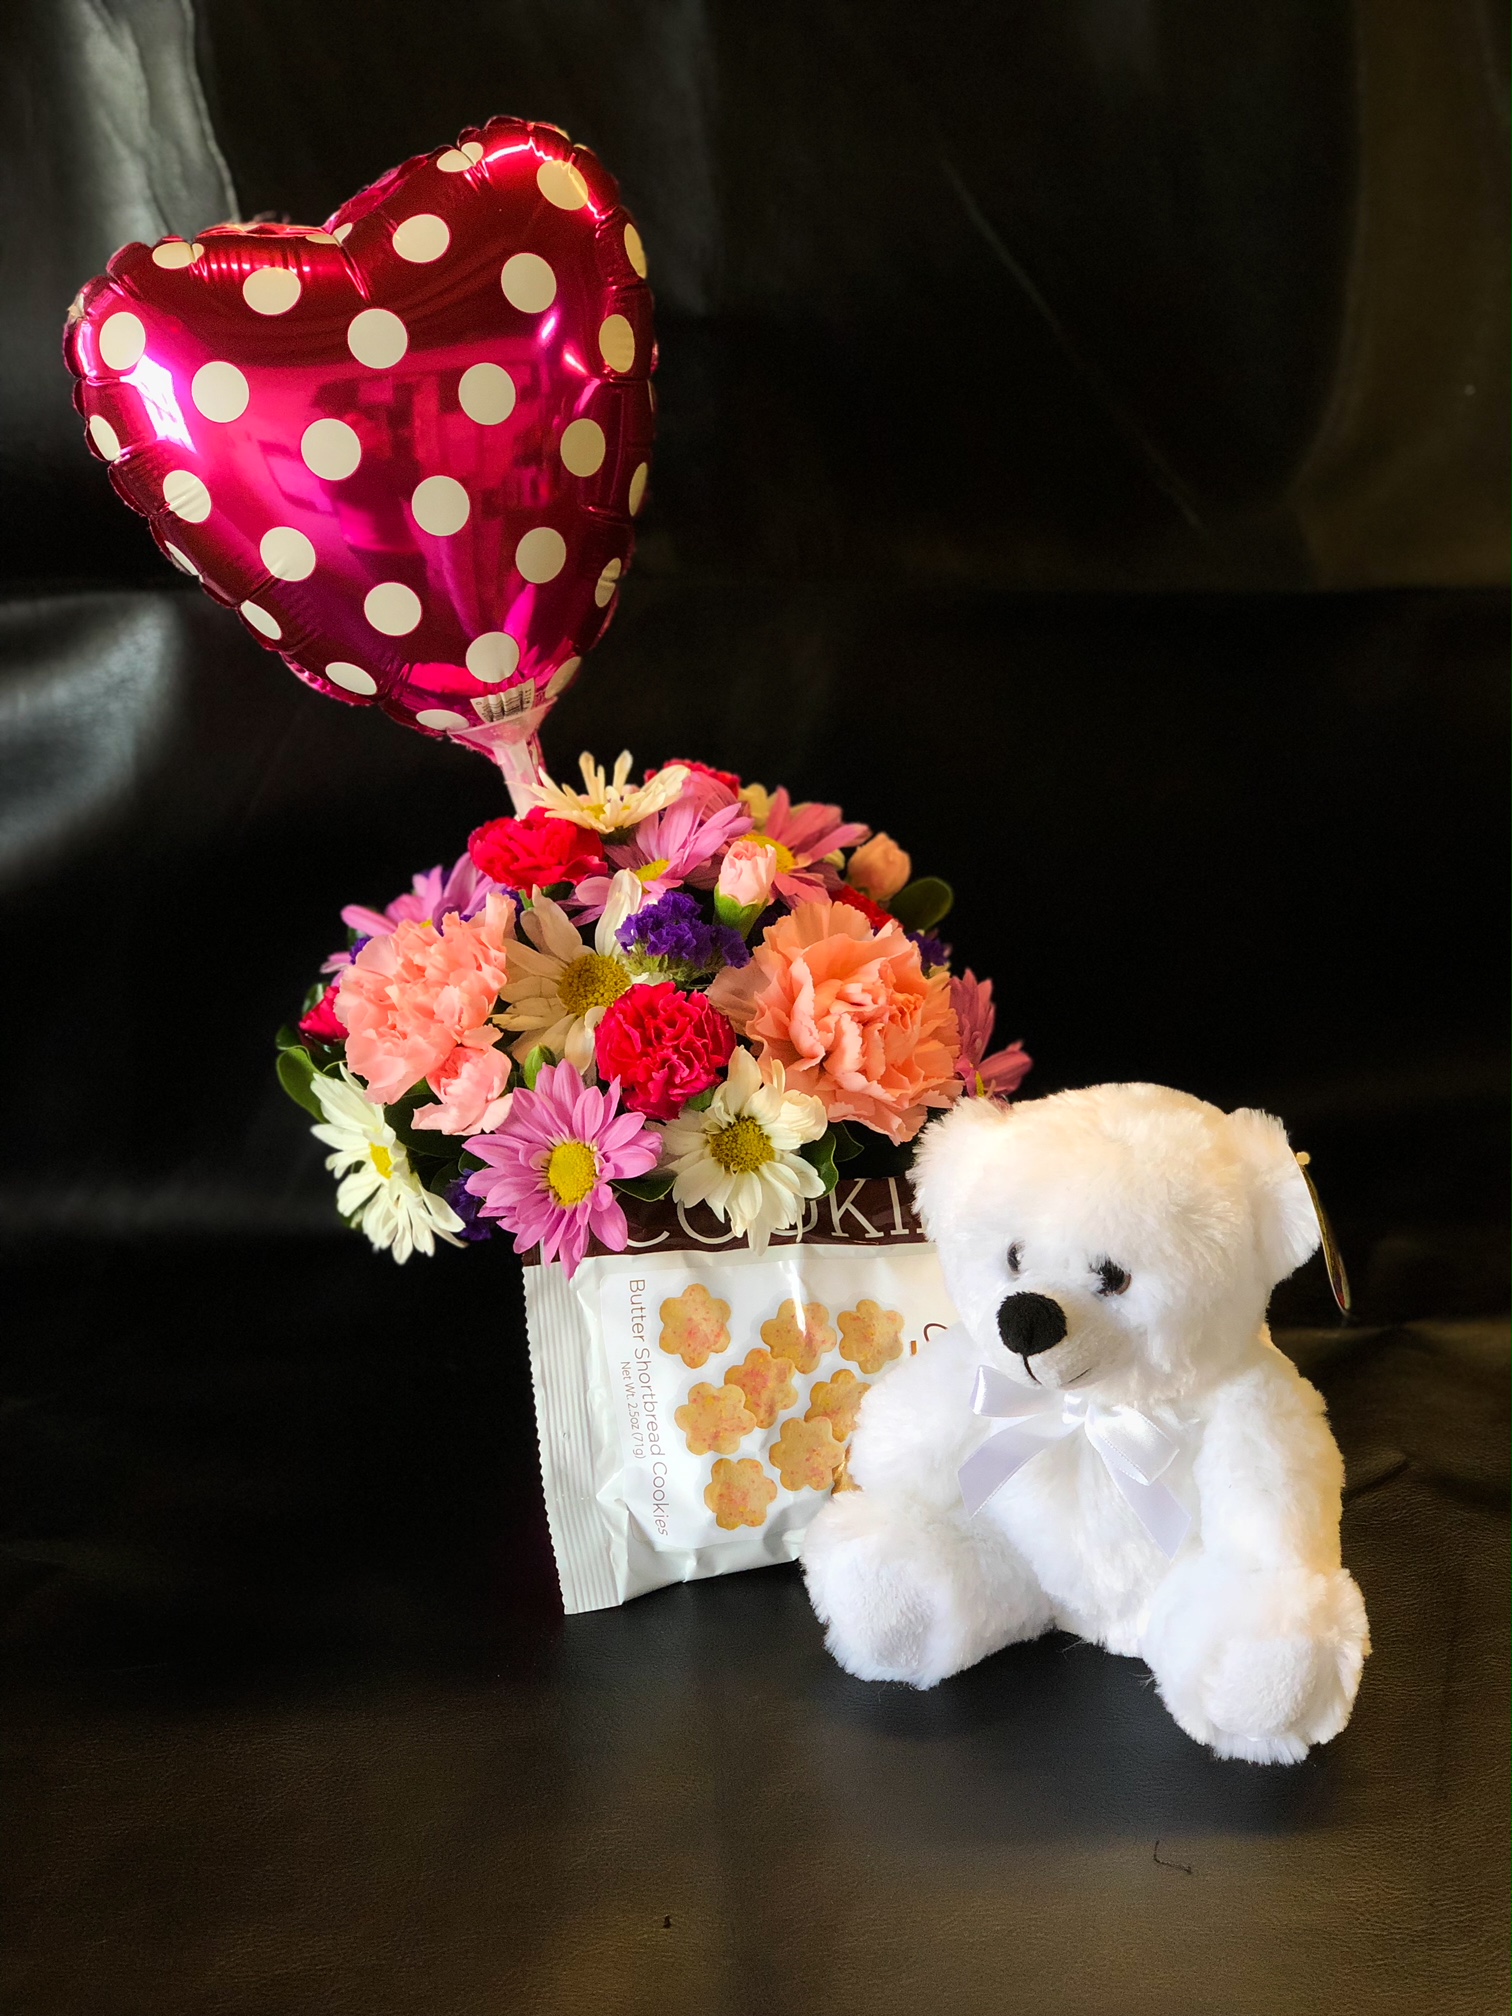 flowers and teddy bear